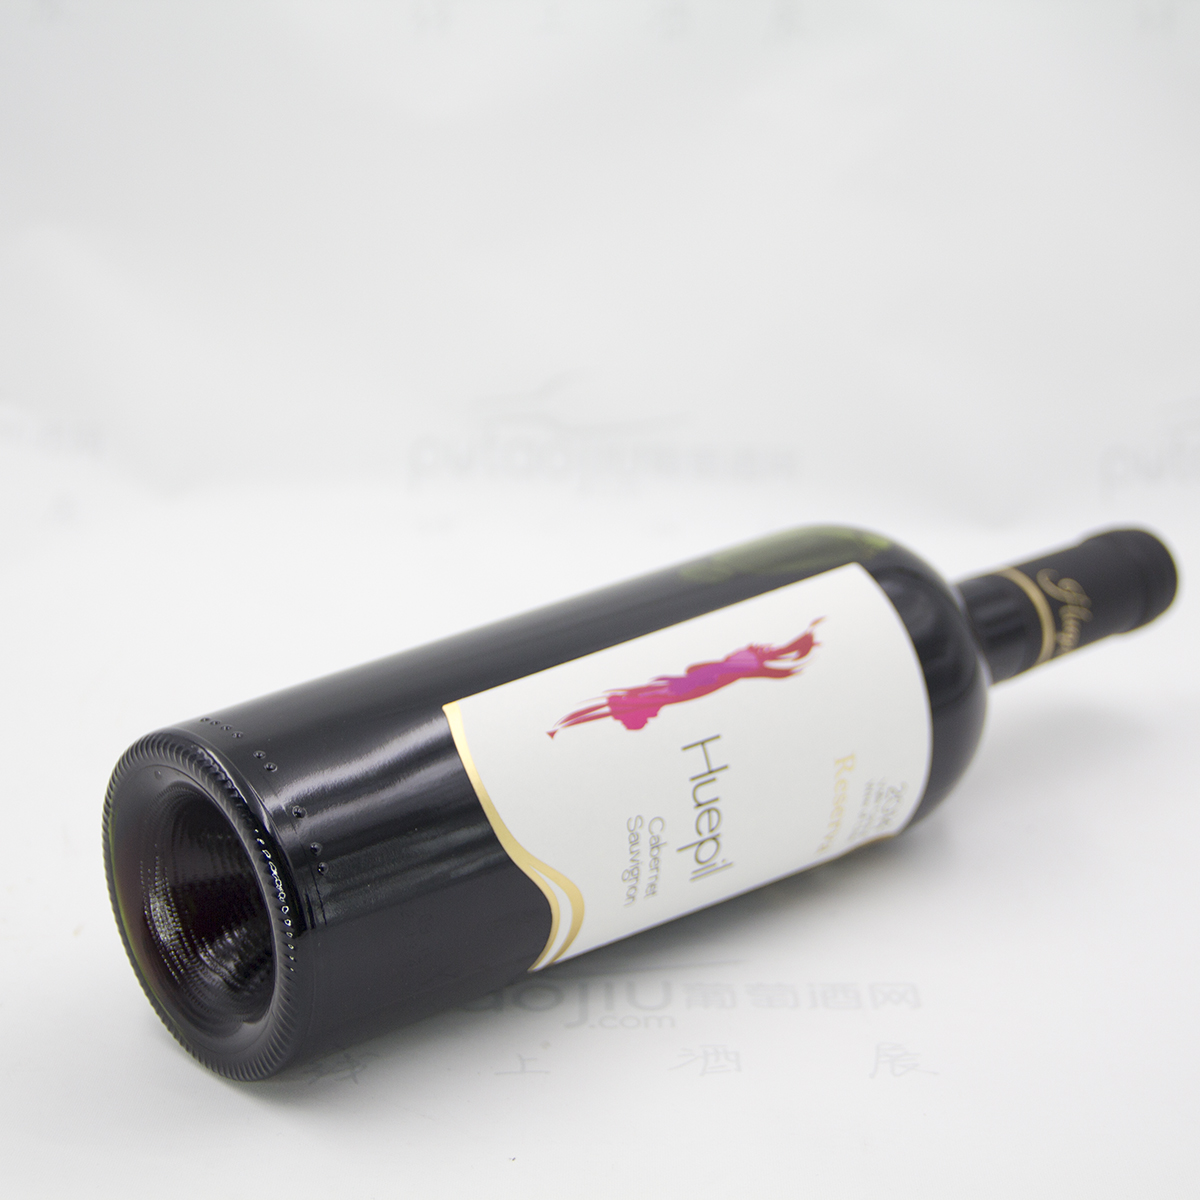 智利中央山谷格雷曼酒庄瓦帕赤霞珠珍藏有机干红葡萄酒